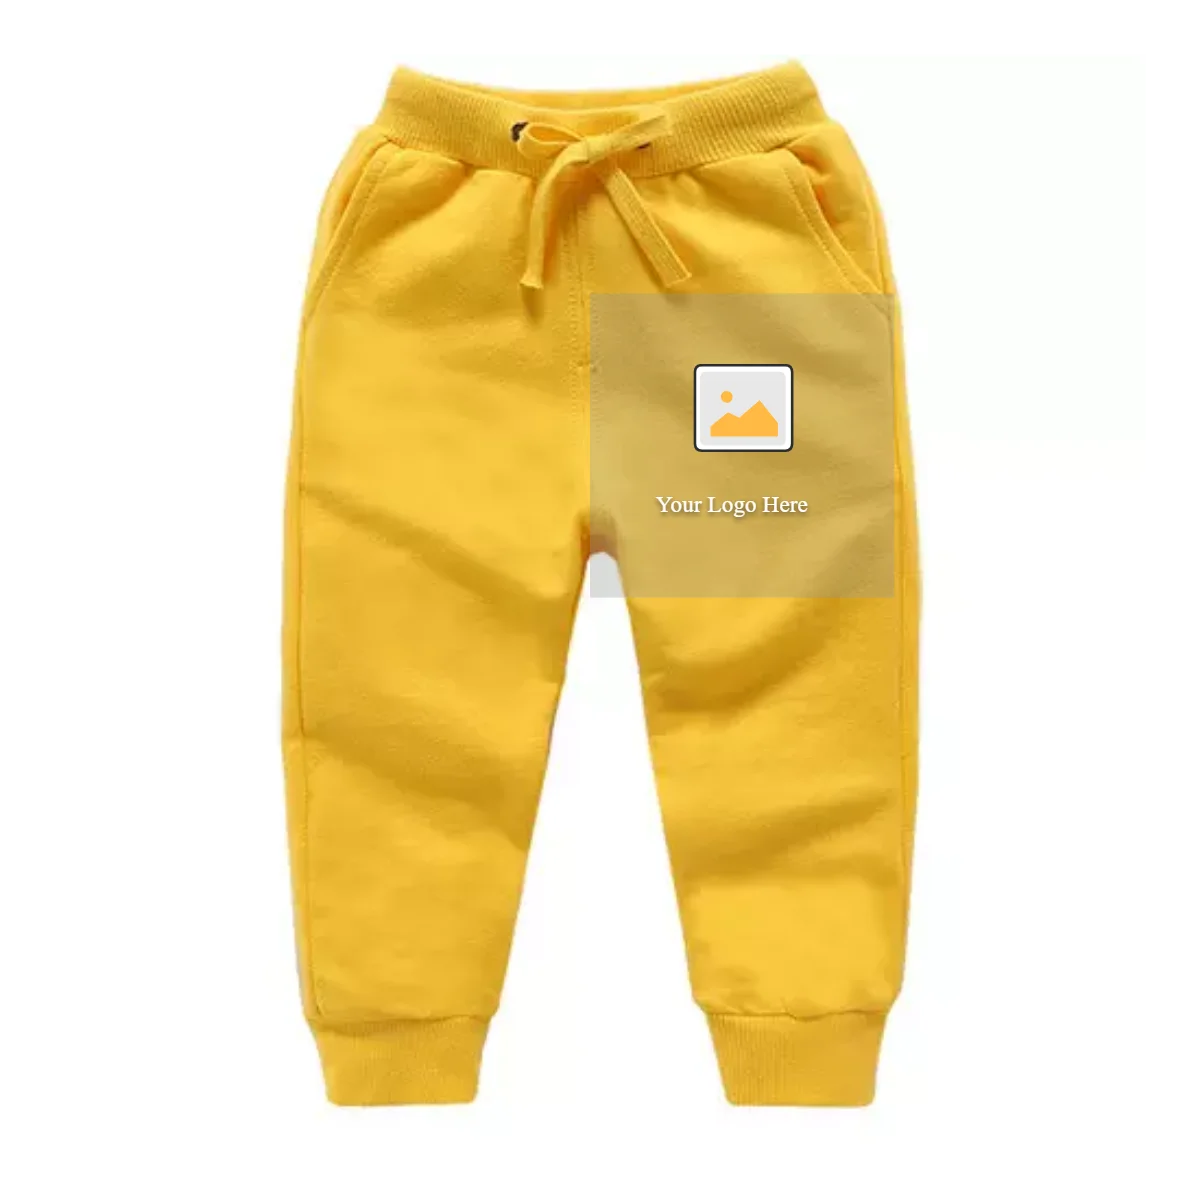 Vêtements Vêtements enfant unisexe Vêtements unisexe pour bébés Pantalons 74/80/68 Survêtement costume « Mammouth » Gr 